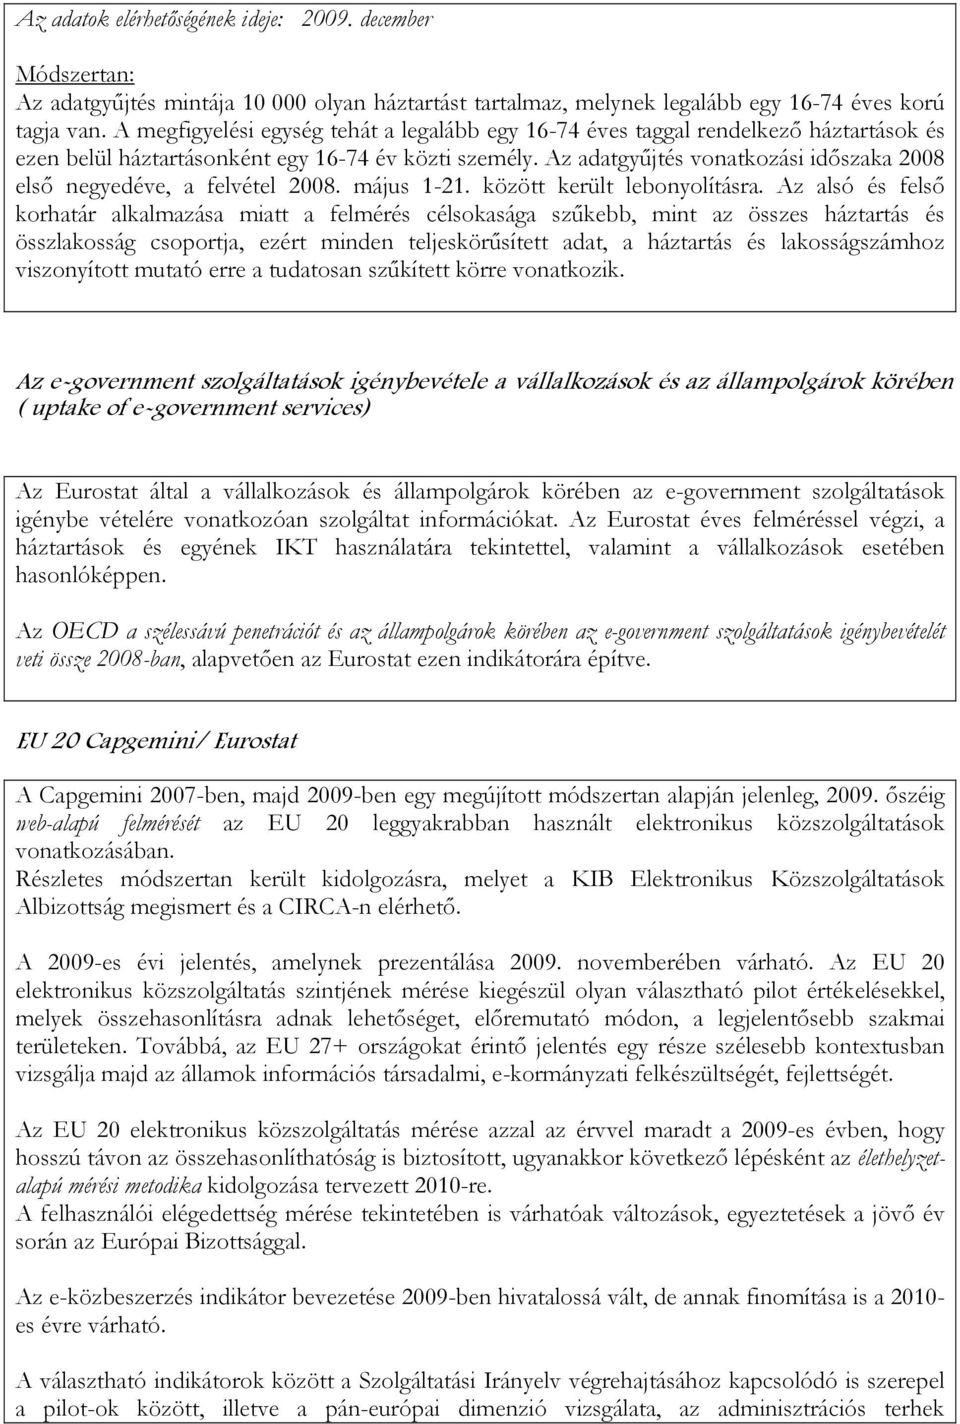 Az adatgyőjtés vonatkozási idıszaka 2008 elsı negyedéve, a felvétel 2008. május 1-21. között került lebonyolításra.